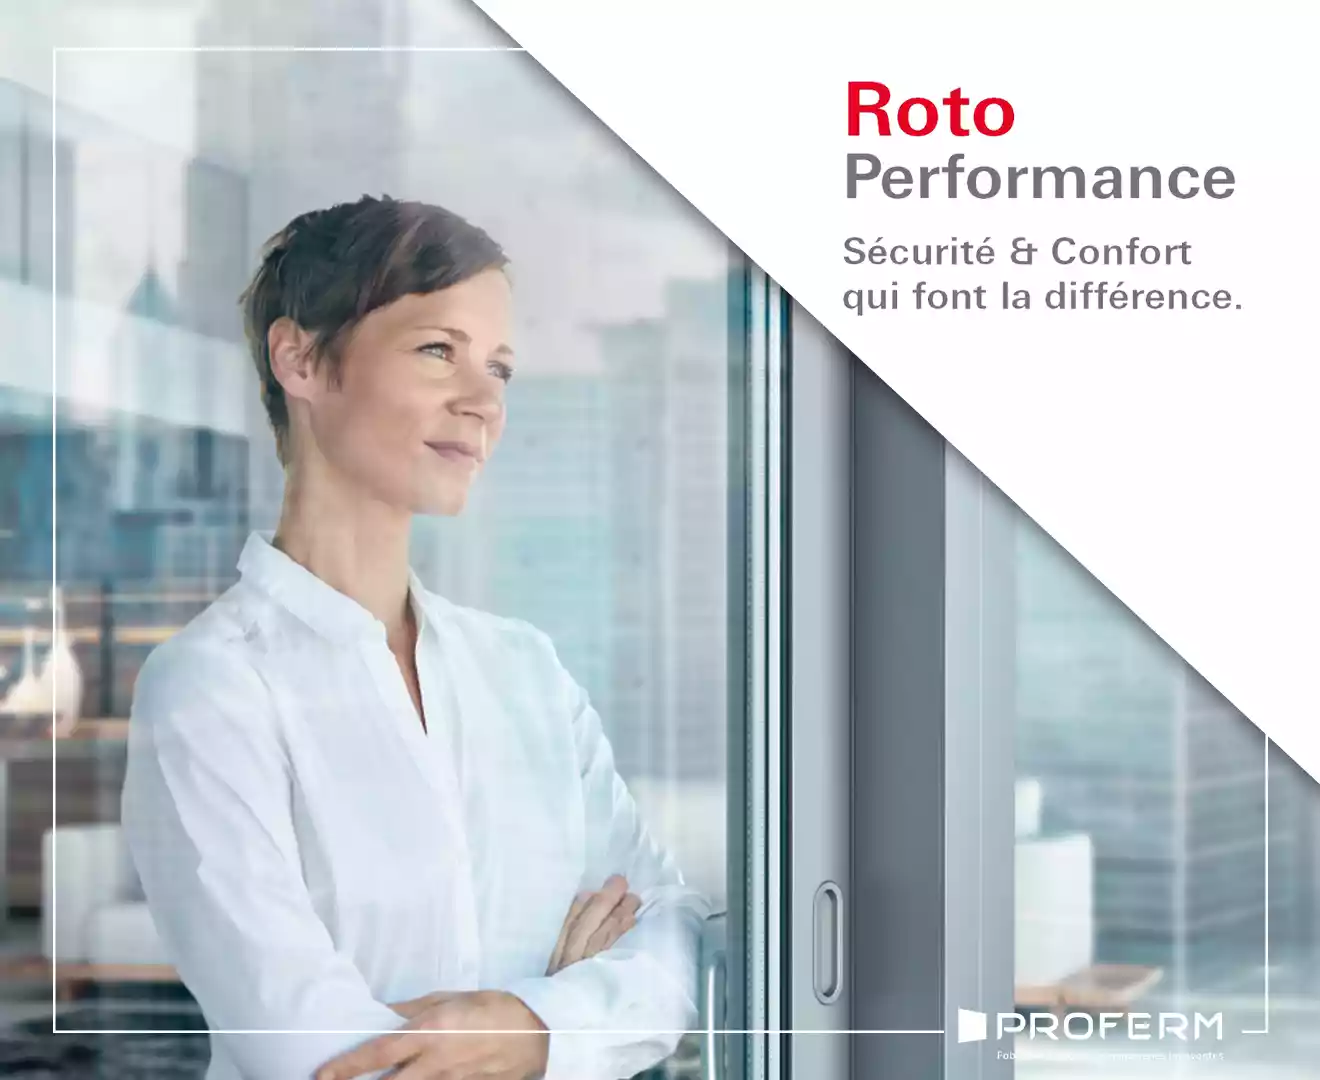 Roto Performance : PROFERM, première entreprise labellisée